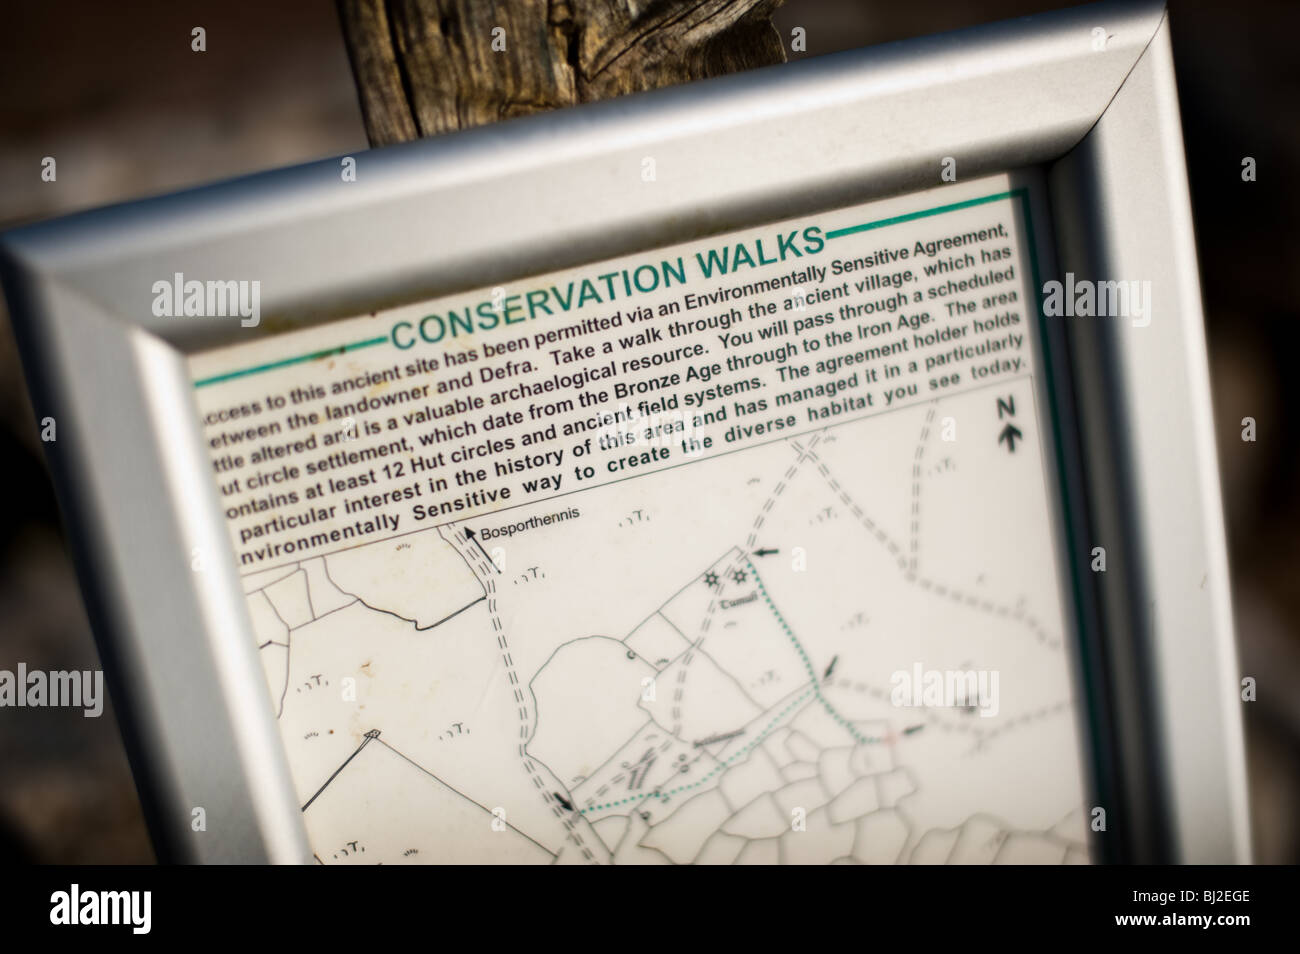 Le DEFRA signer dans la campagne des Cornouailles qui donnent des informations sur les promenades de conservation Banque D'Images